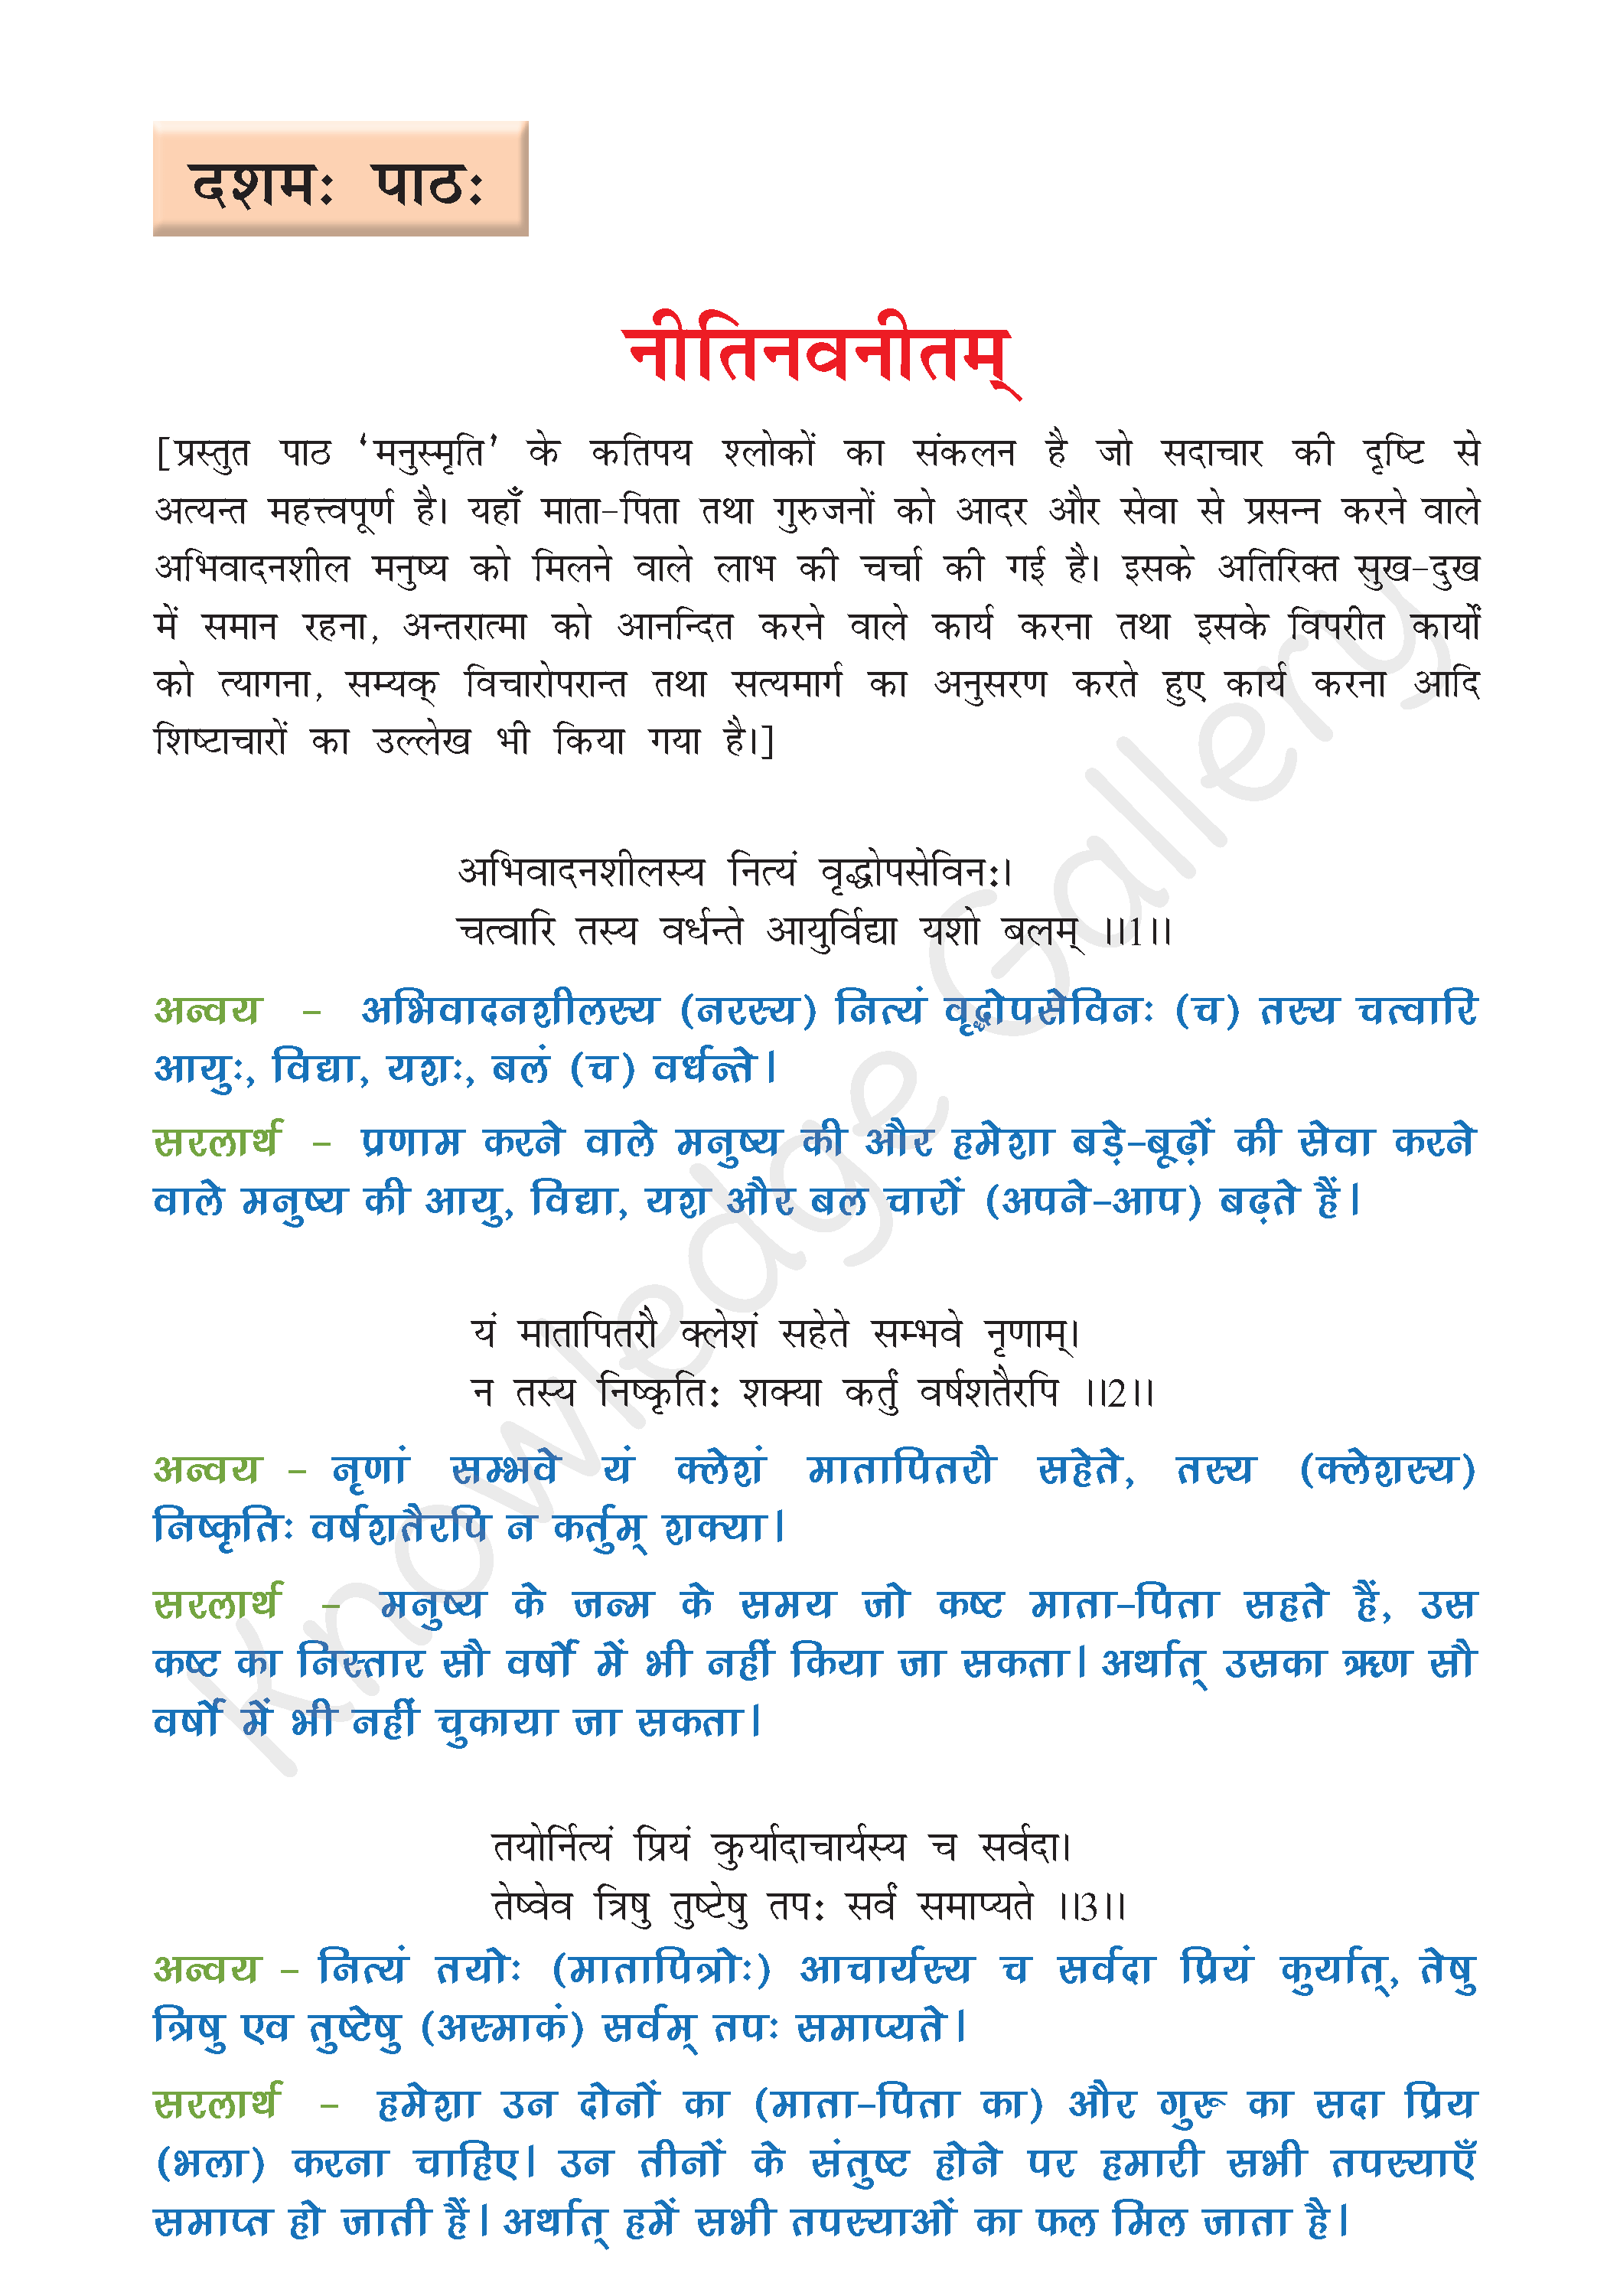 NCERT Solution For Class 8 Sanskrit Chapter 10 part 1